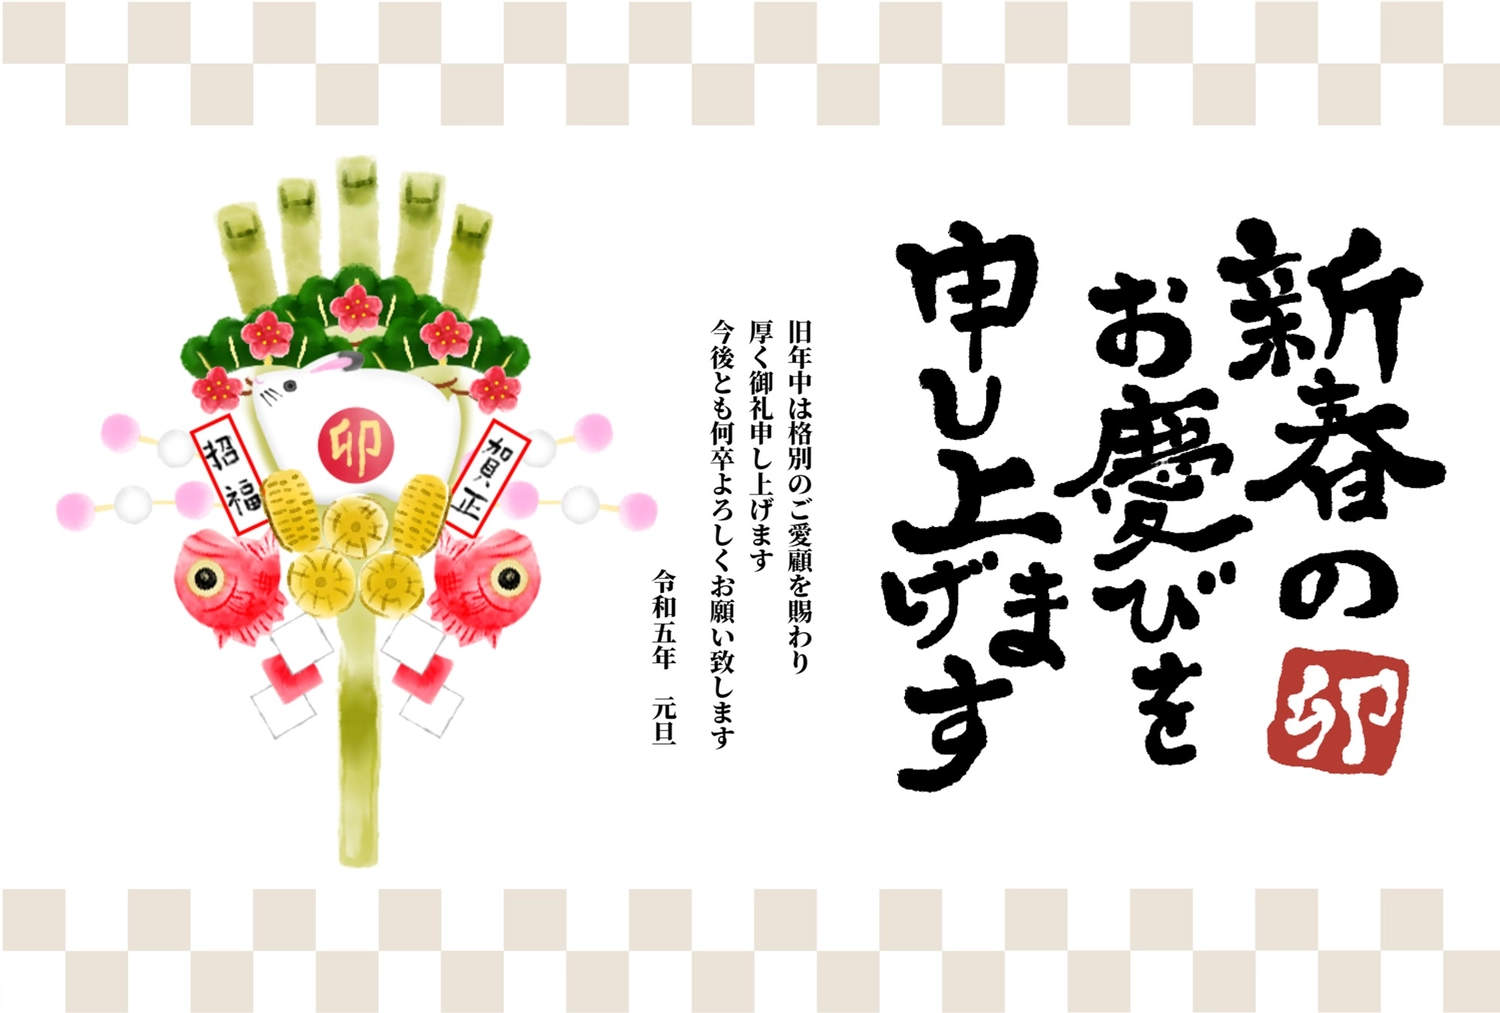 年賀状　熊手, New Year's decoration of willow, etc. branches with colored rice balls, Happy New Year!, sign and seal, New Year Card template